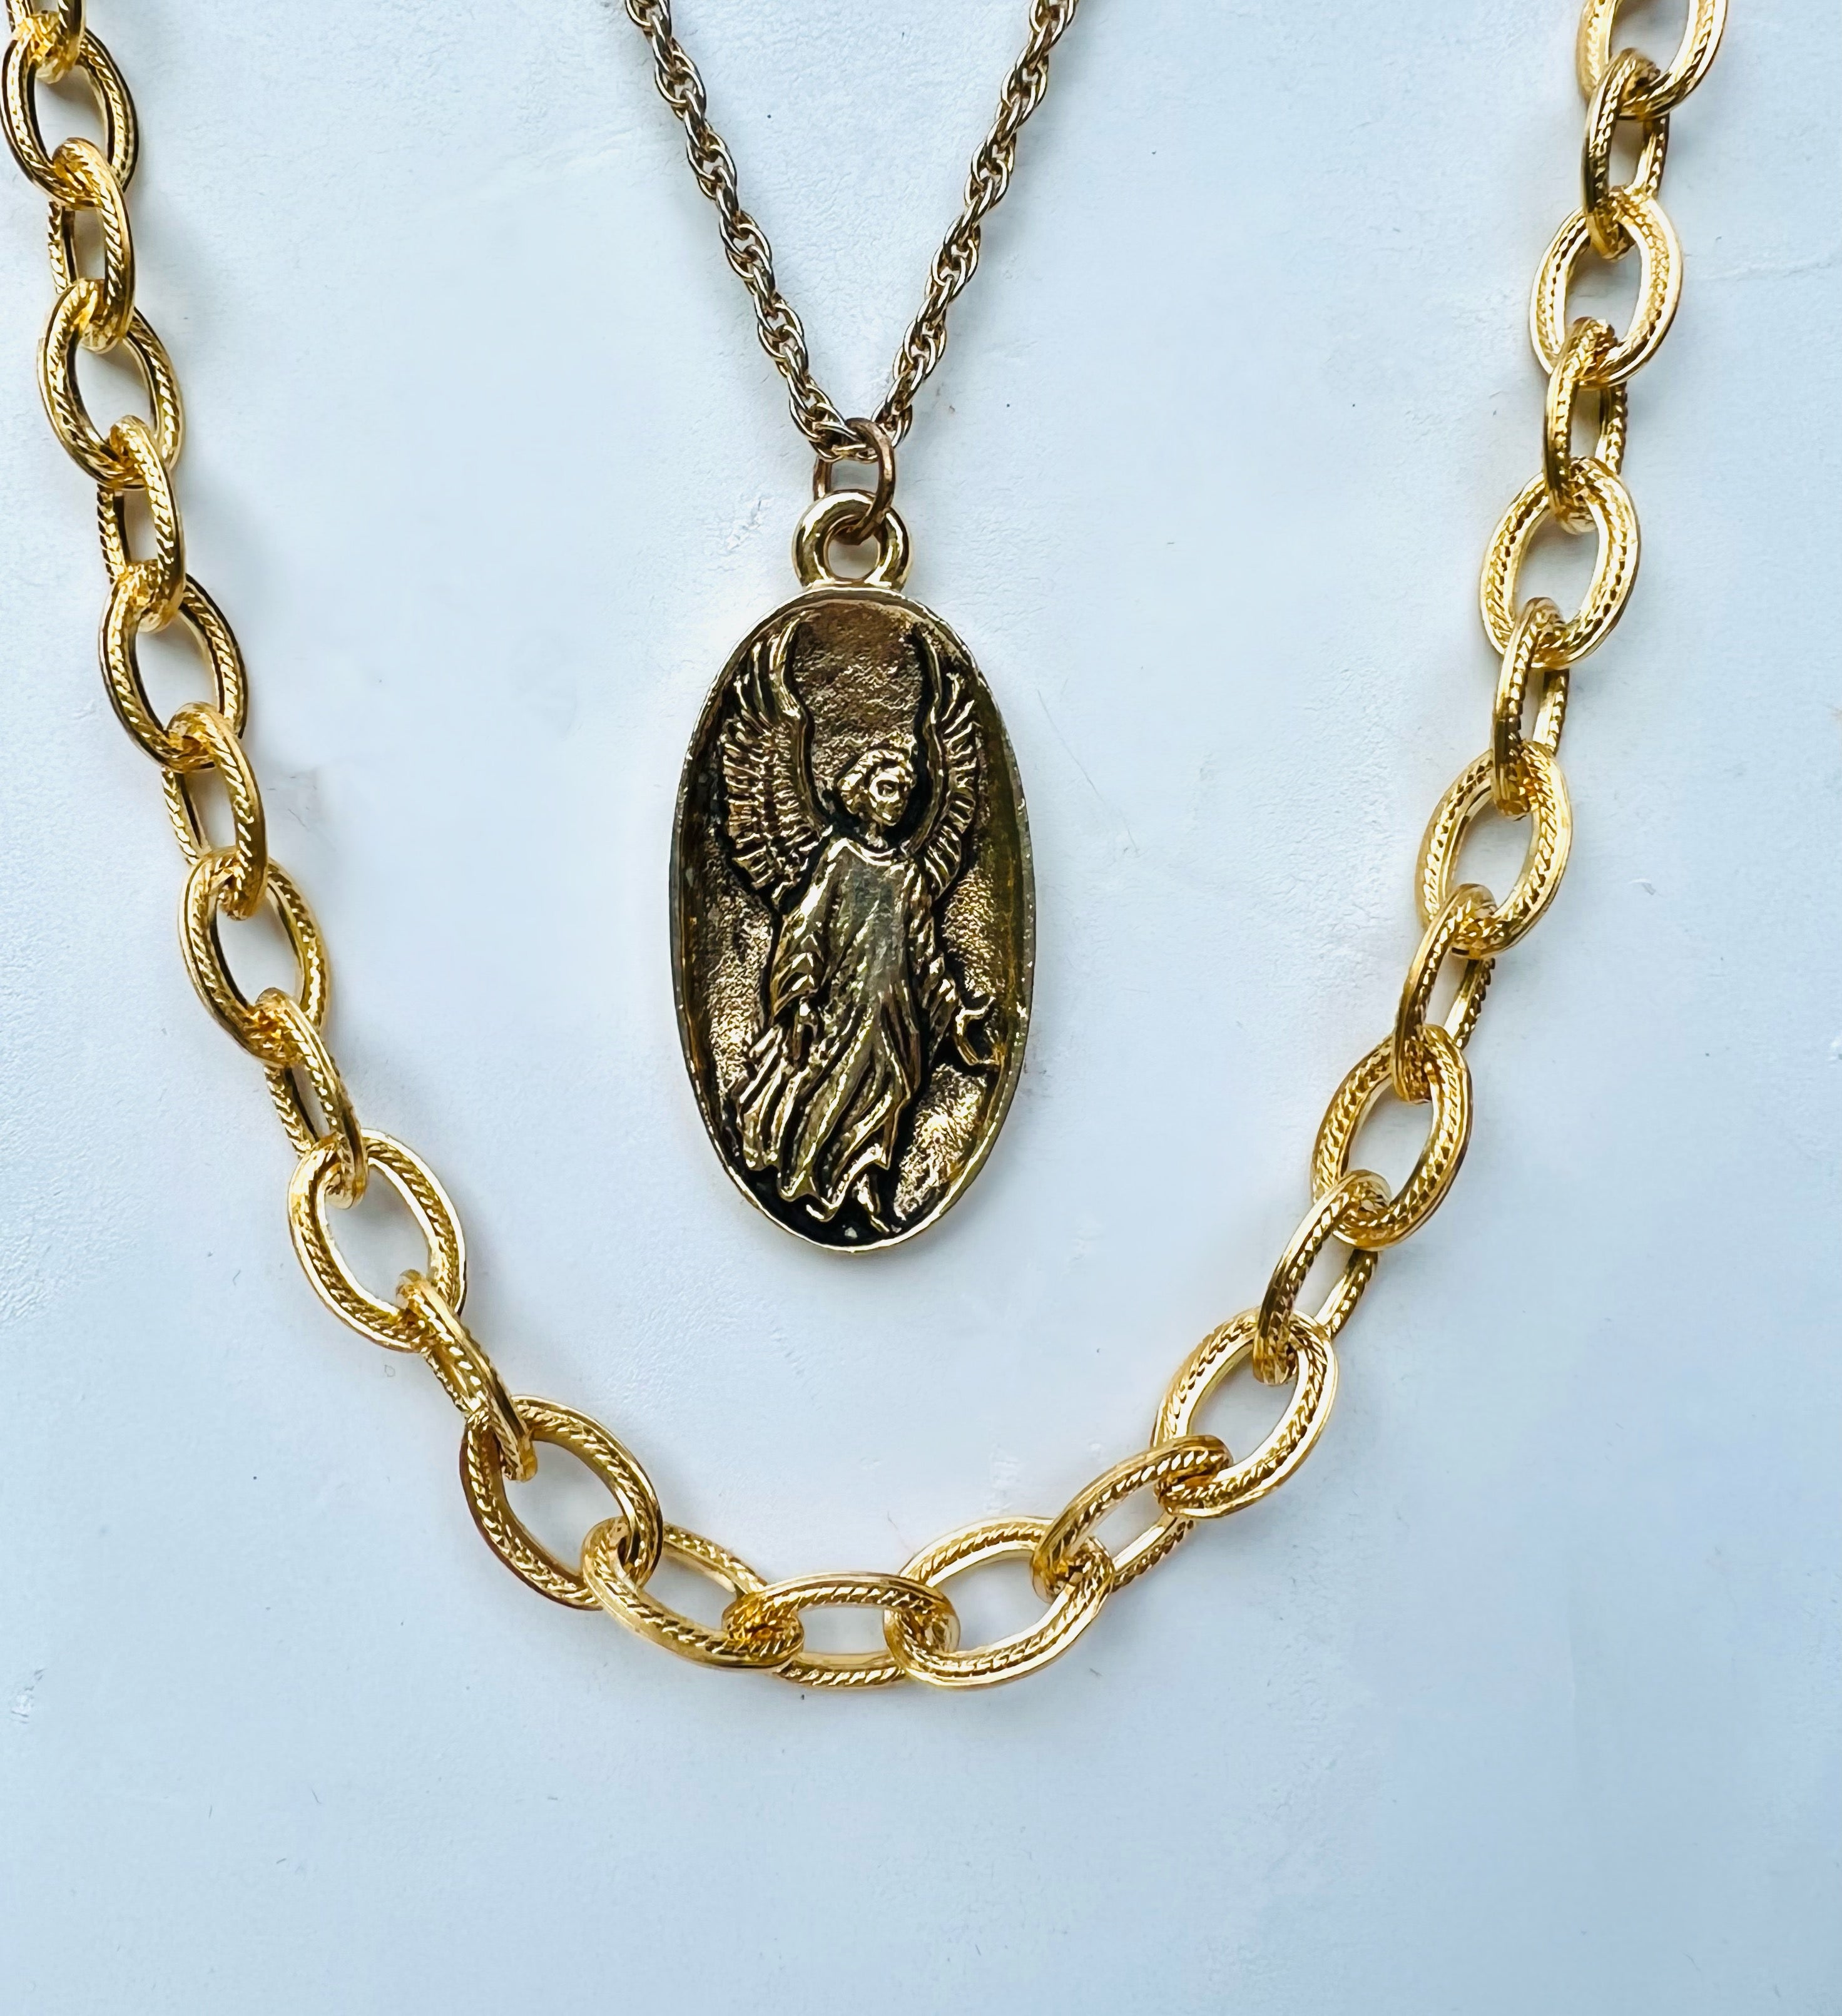 Vintage guardian angel necklace